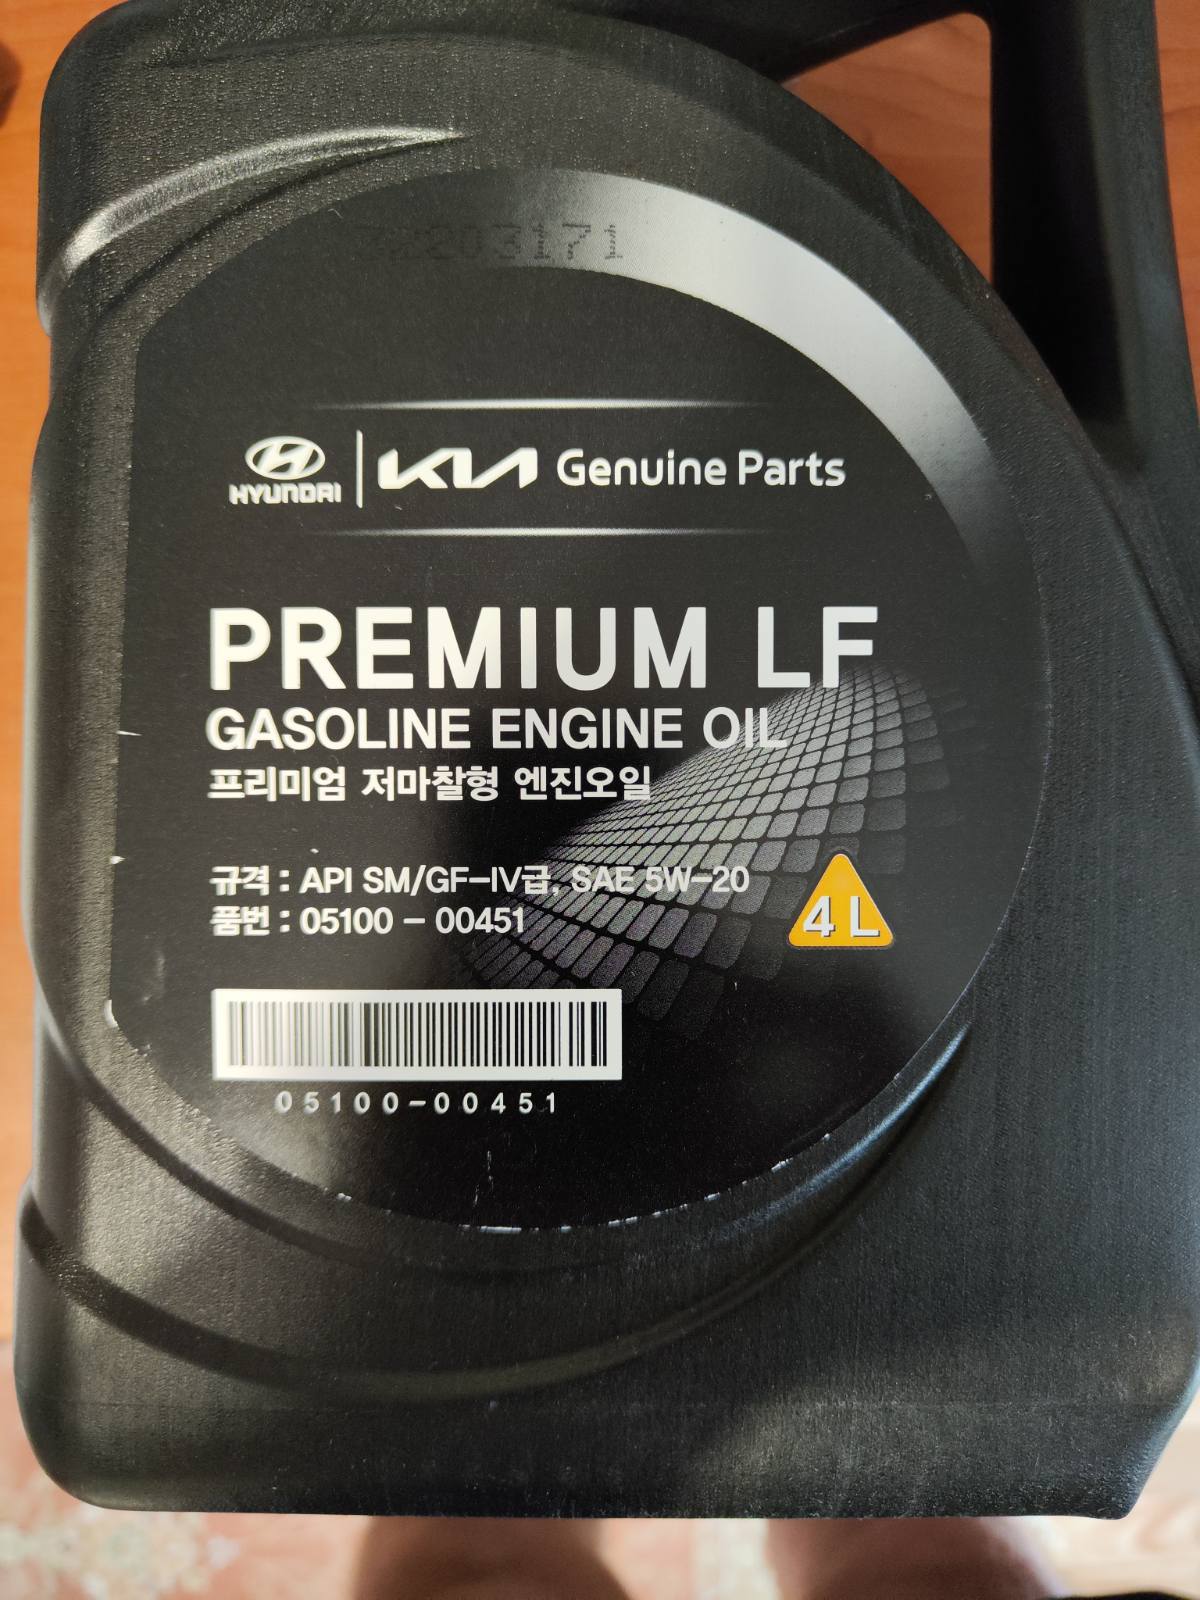 Hyundai premium lf gasoline 5w 20. Показатель сульфатной зольности масло 5w20 Premium LF. Прожарка Premium LF 5-20. Mobis Premium LF gasoline 5w-30 цены.